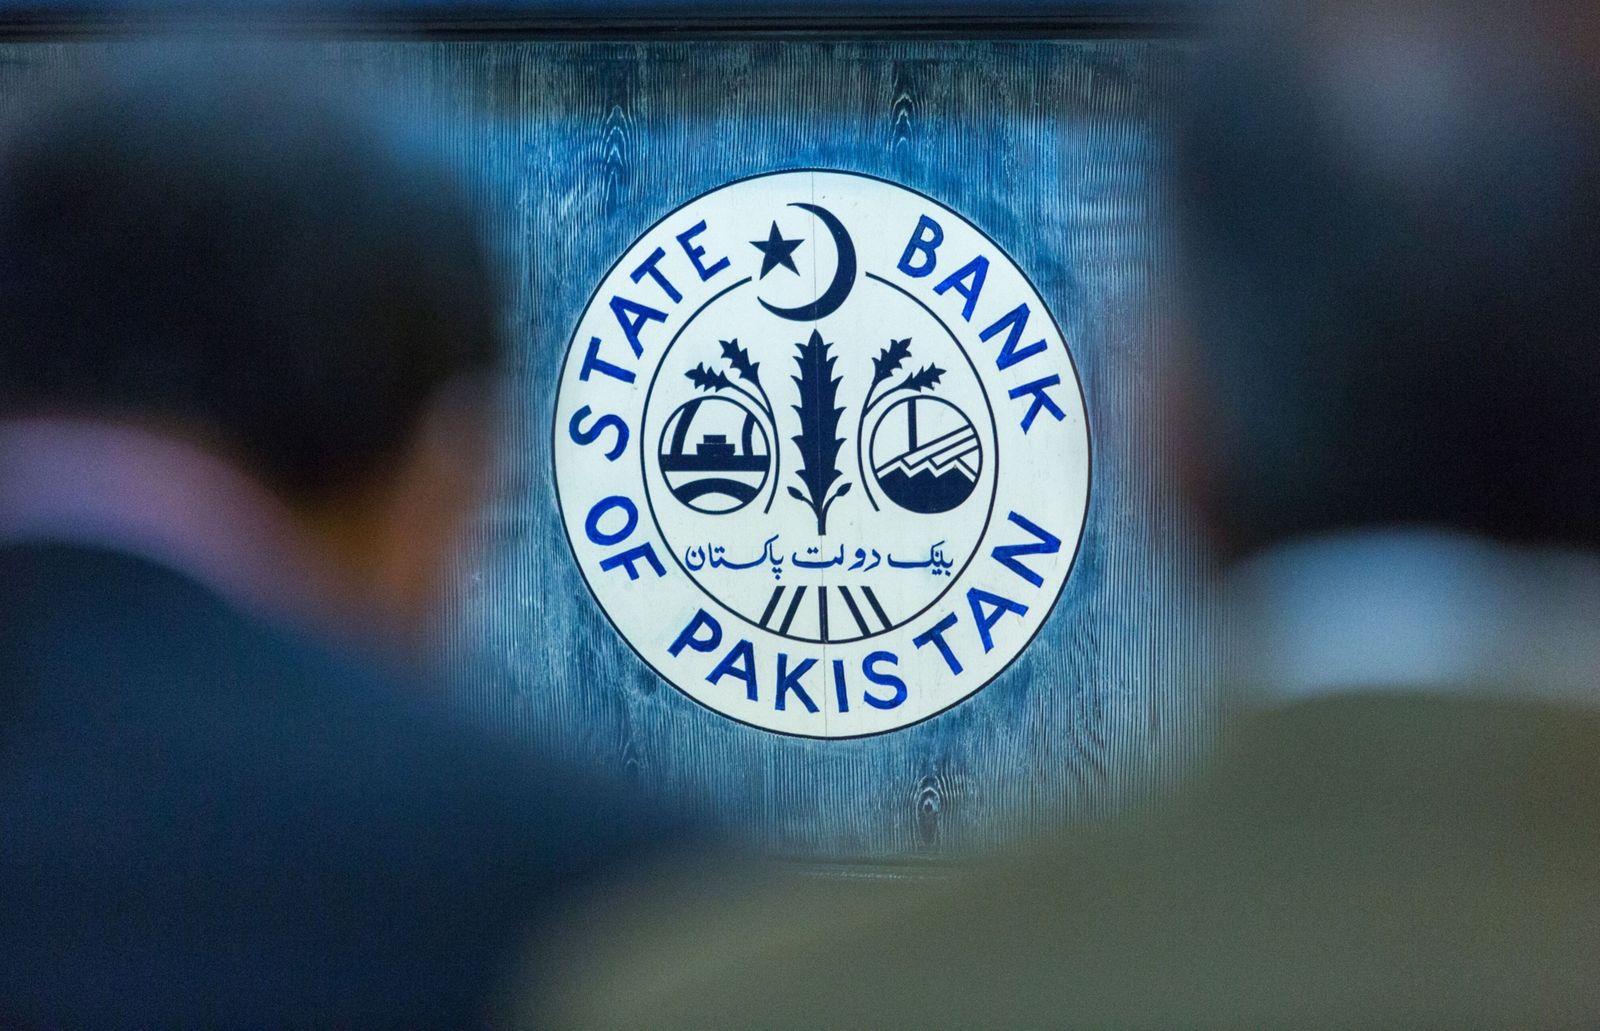 تنفيذ باكستان برنامج صندوق النقد مرهون بالاستقرار السياسي